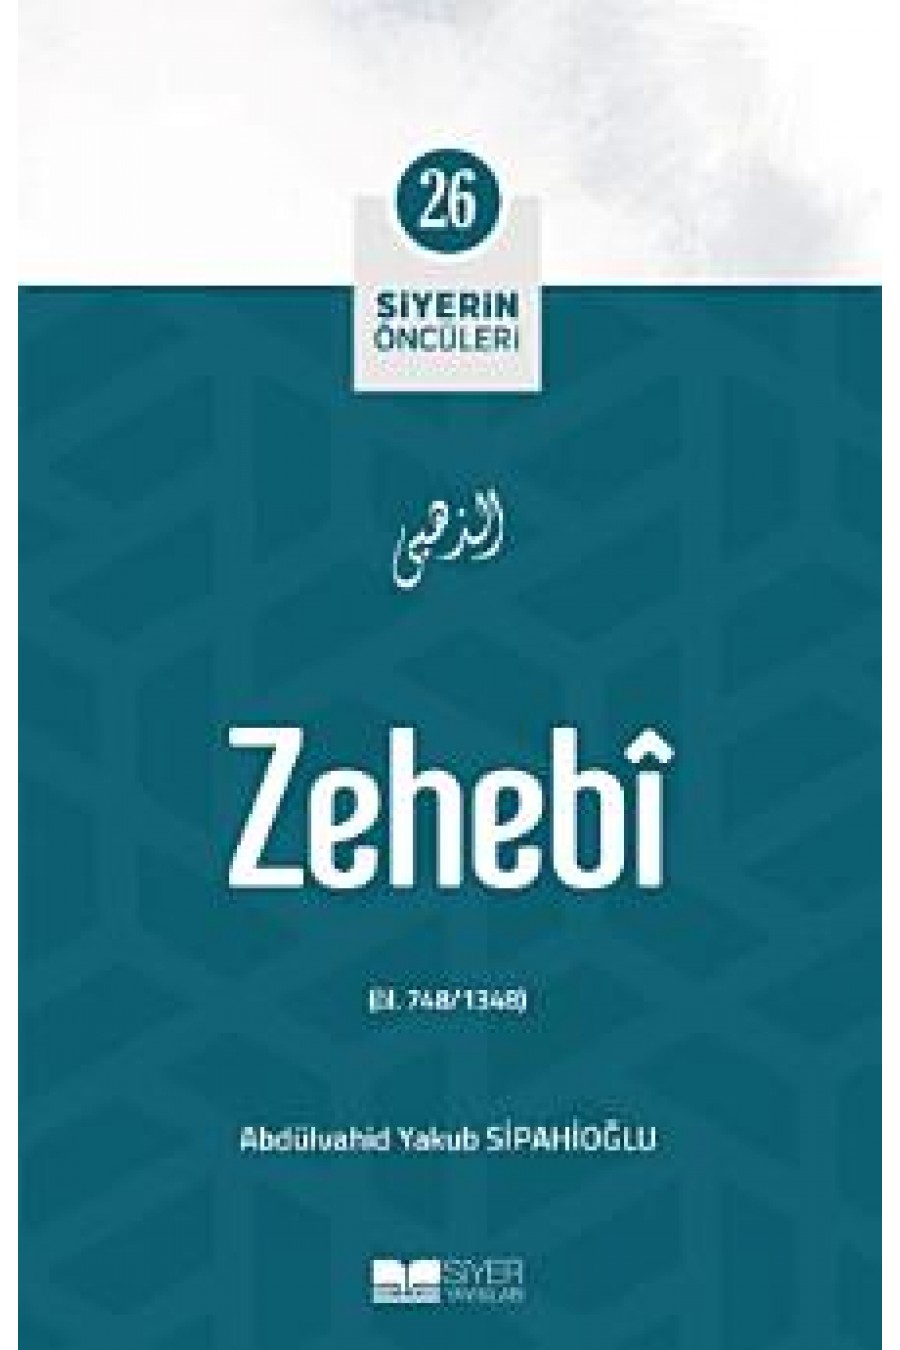 Zehebi; Siyerin Öncüleri 26